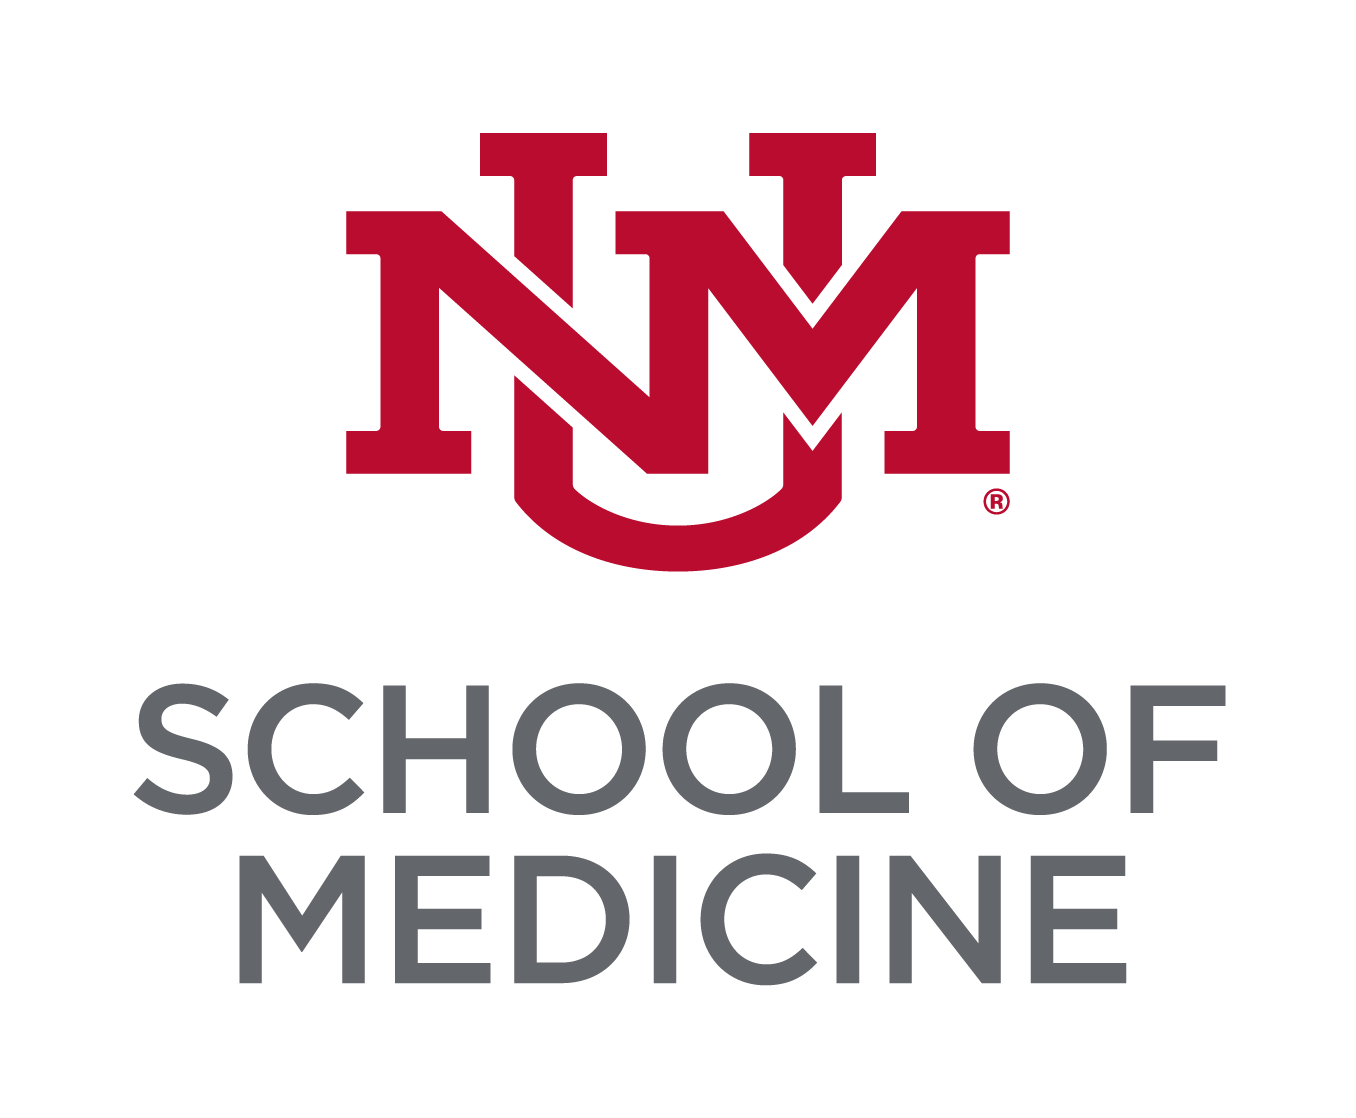 מונוגרמת הבלוק האדום של UNM לאוניברסיטה מוערמת מעל הכותרת של לובו גריי "בית ספר לרפואה".